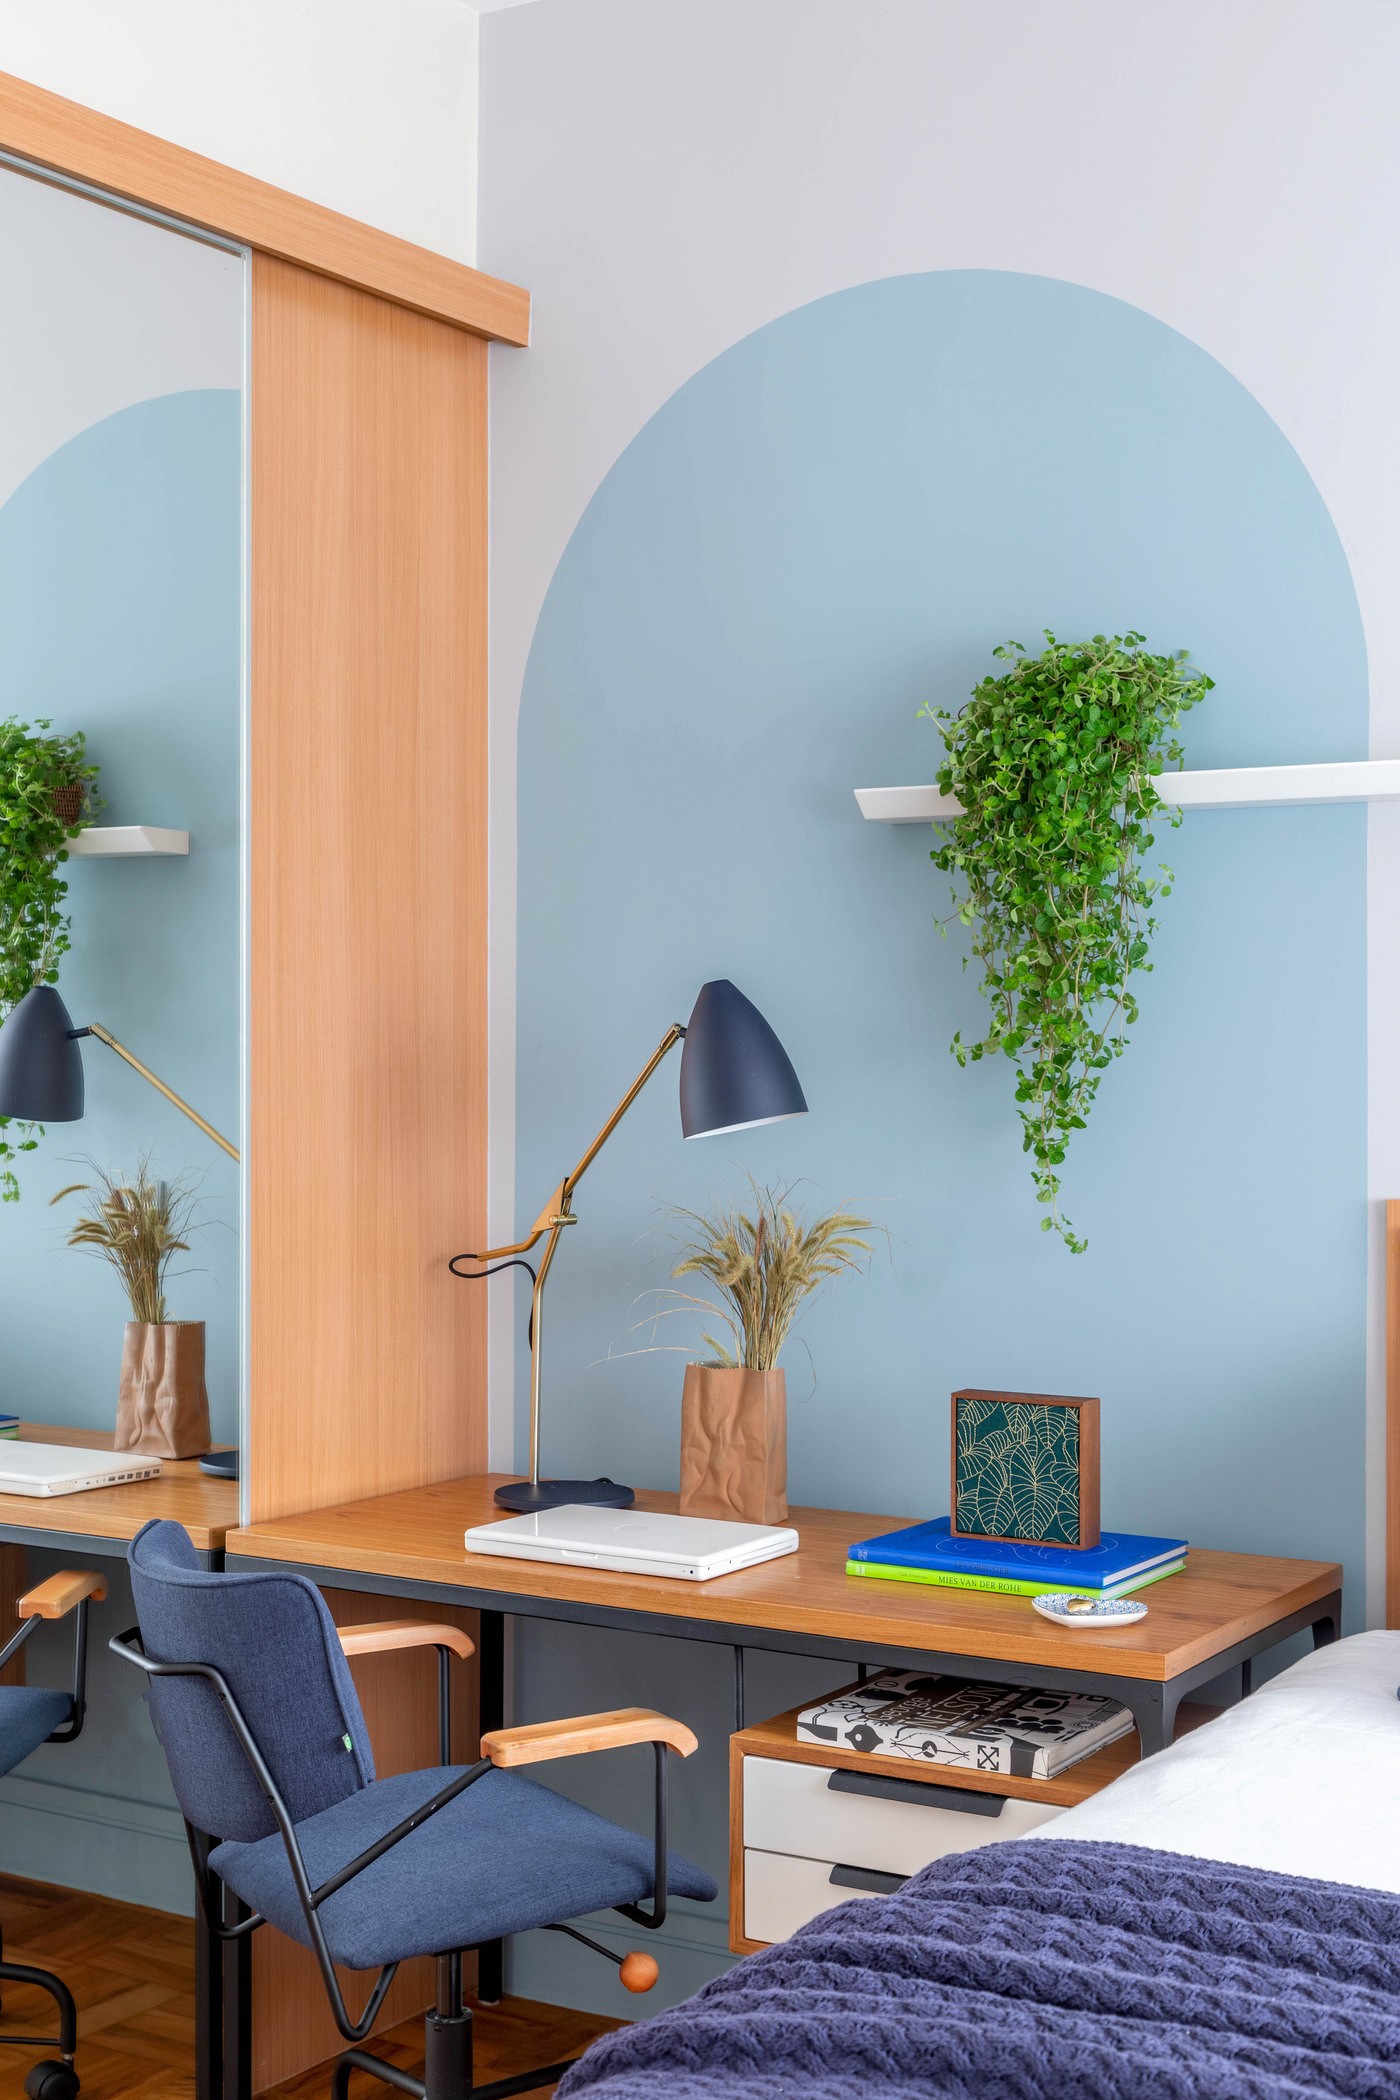 Décor do dia: quarto com tons de azul tem home office e arco na parede (Foto: Rafael Renzo)